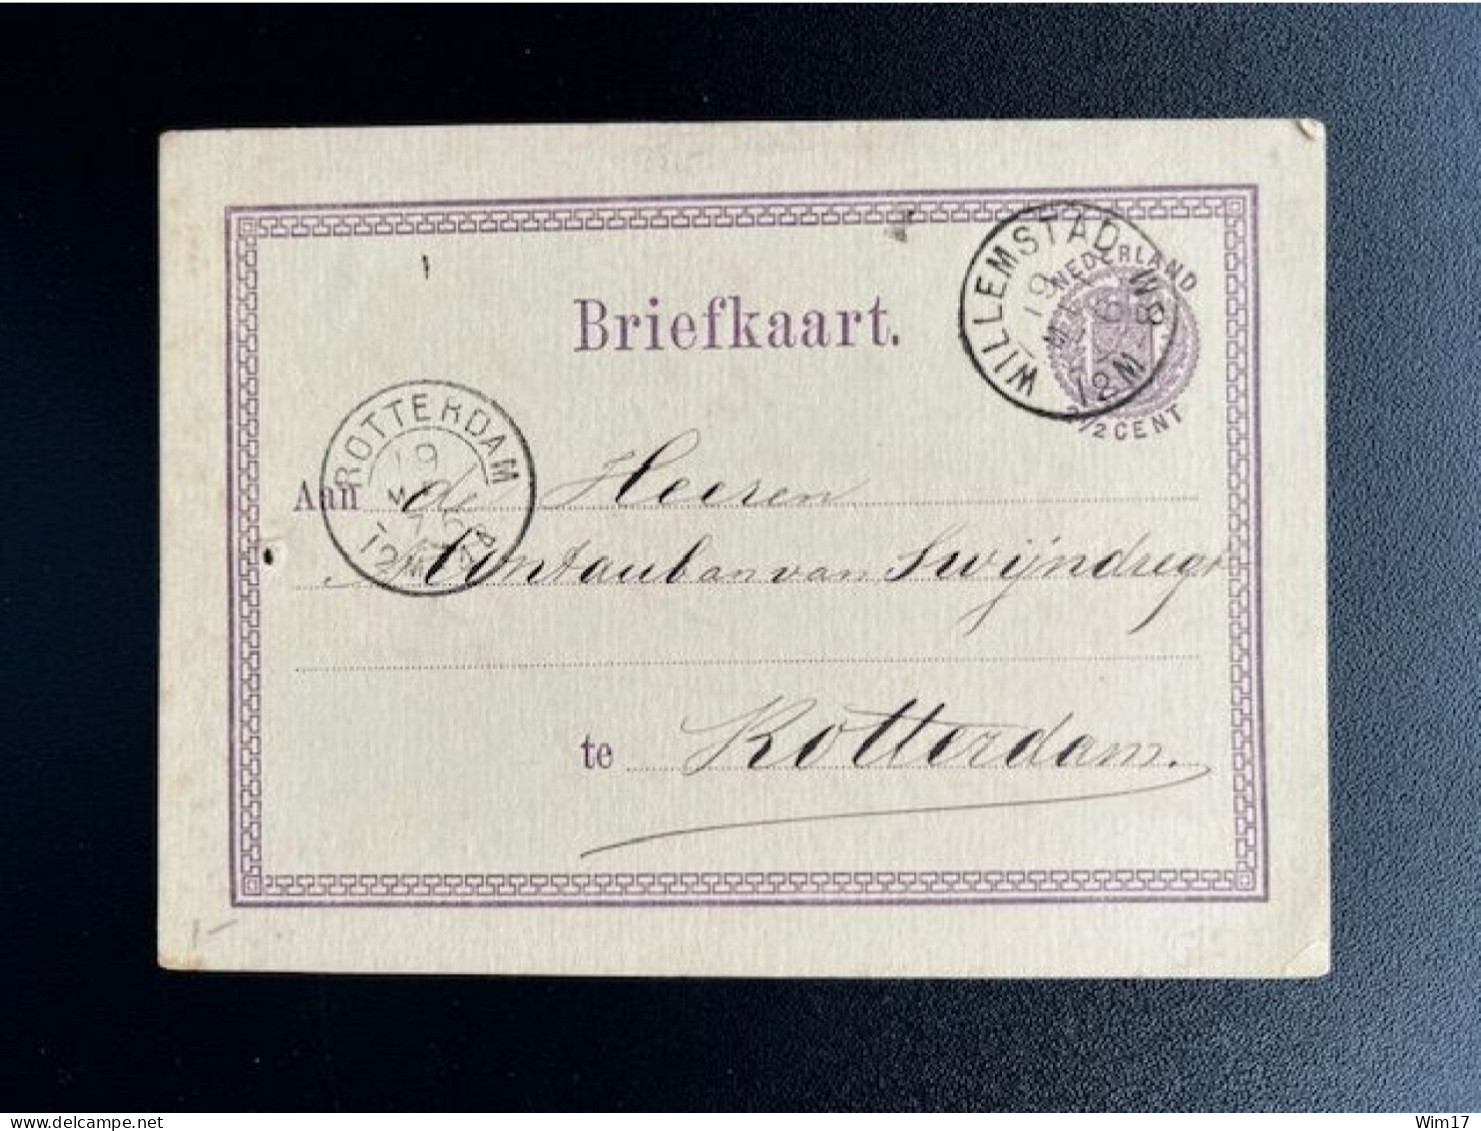 NETHERLANDS 1876 POSTCARD WILLEMSTAD TO ROTTERDAM 19-05-1876 NEDERLAND BRIEFKAART - Postal Stationery